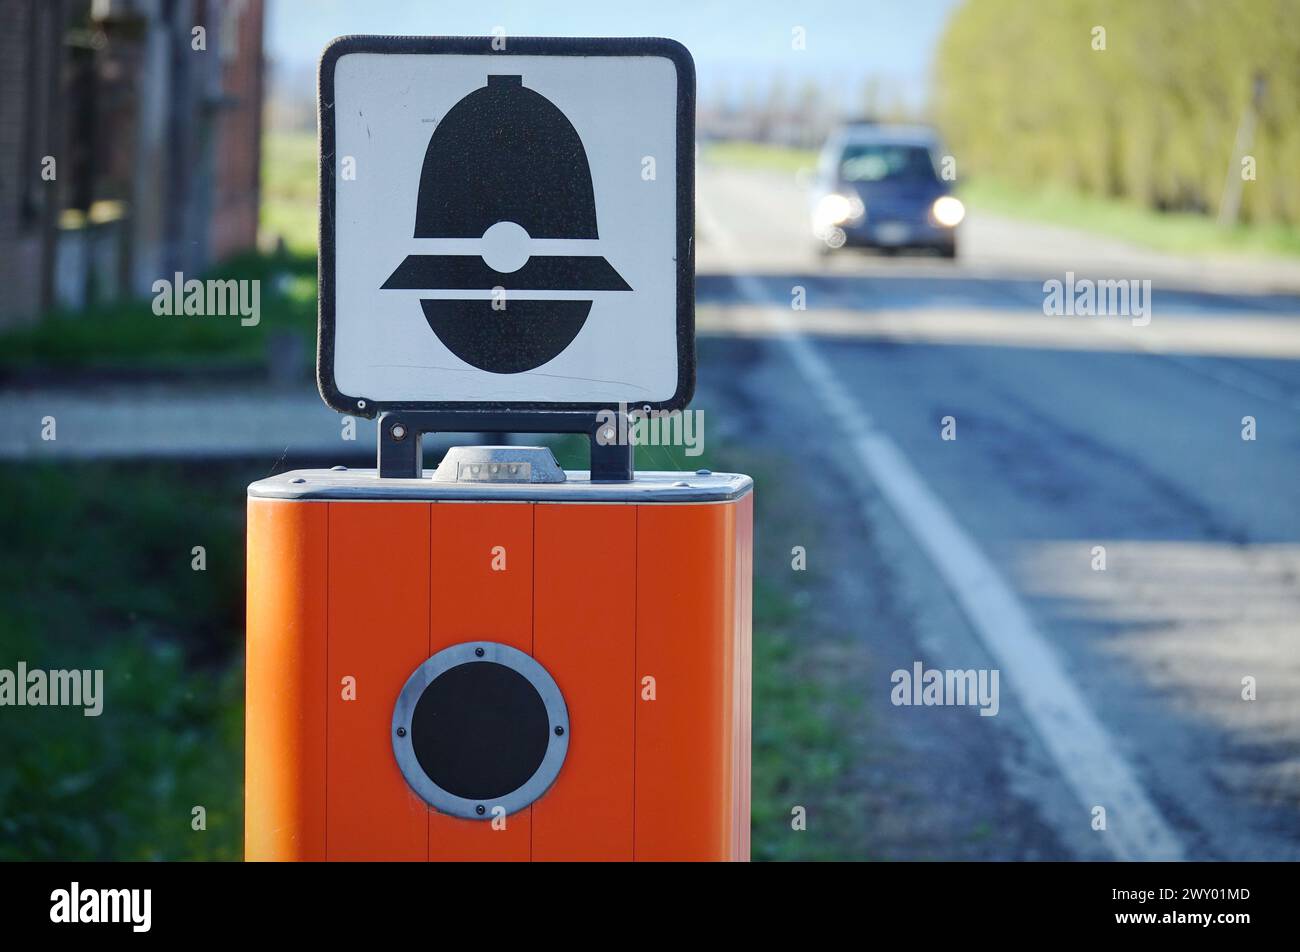 Caméra d'application de la circulation avec TEXTE qui signifie contrôle électronique de la vitesse en italien et symbole de police Banque D'Images